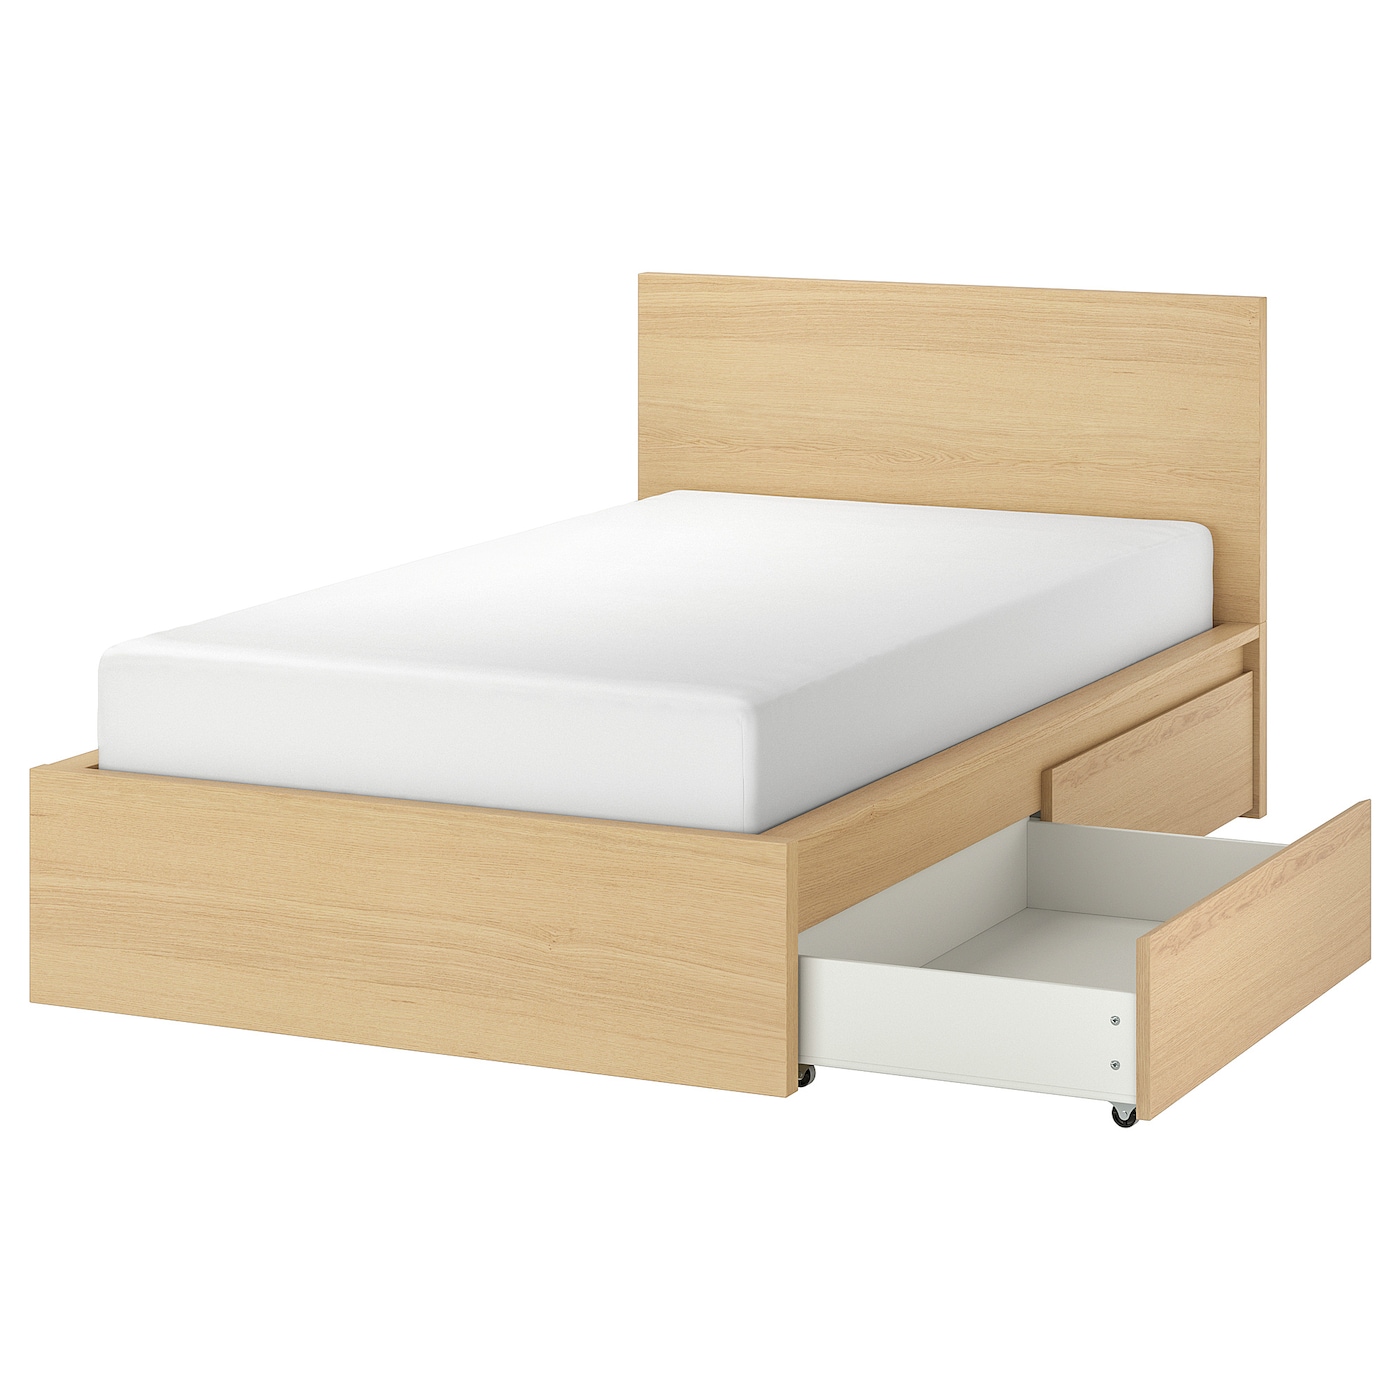 Каркас кровати с 2 ящиками для хранения - IKEA MALM, 200х120 см, под беленый дуб, МАЛЬМ ИКЕА